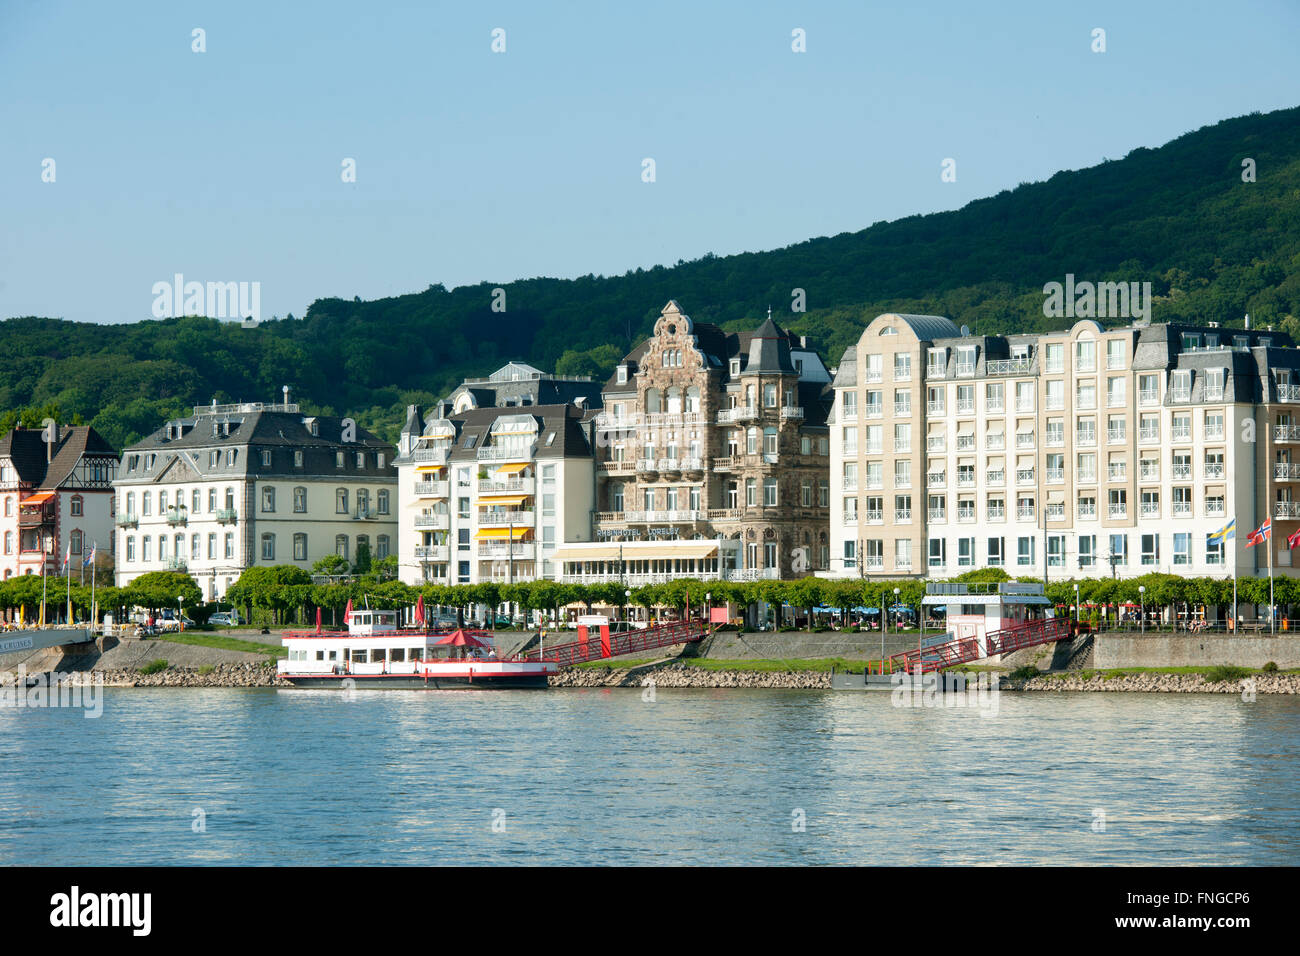 Deutschland, Königswinter, Ansicht vom Rhein Stockfotografie - Alamy